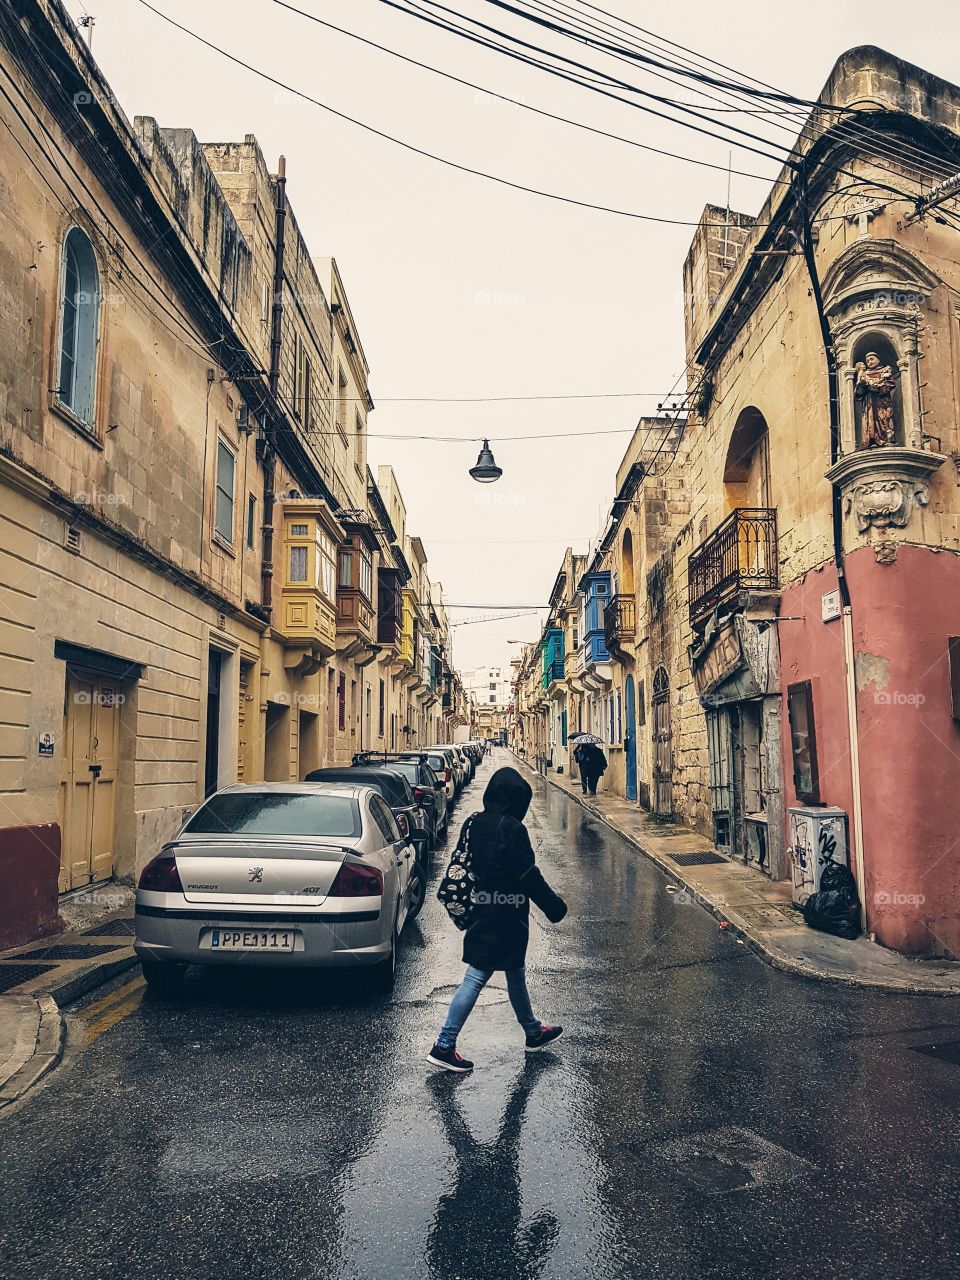 Light rain in Malta